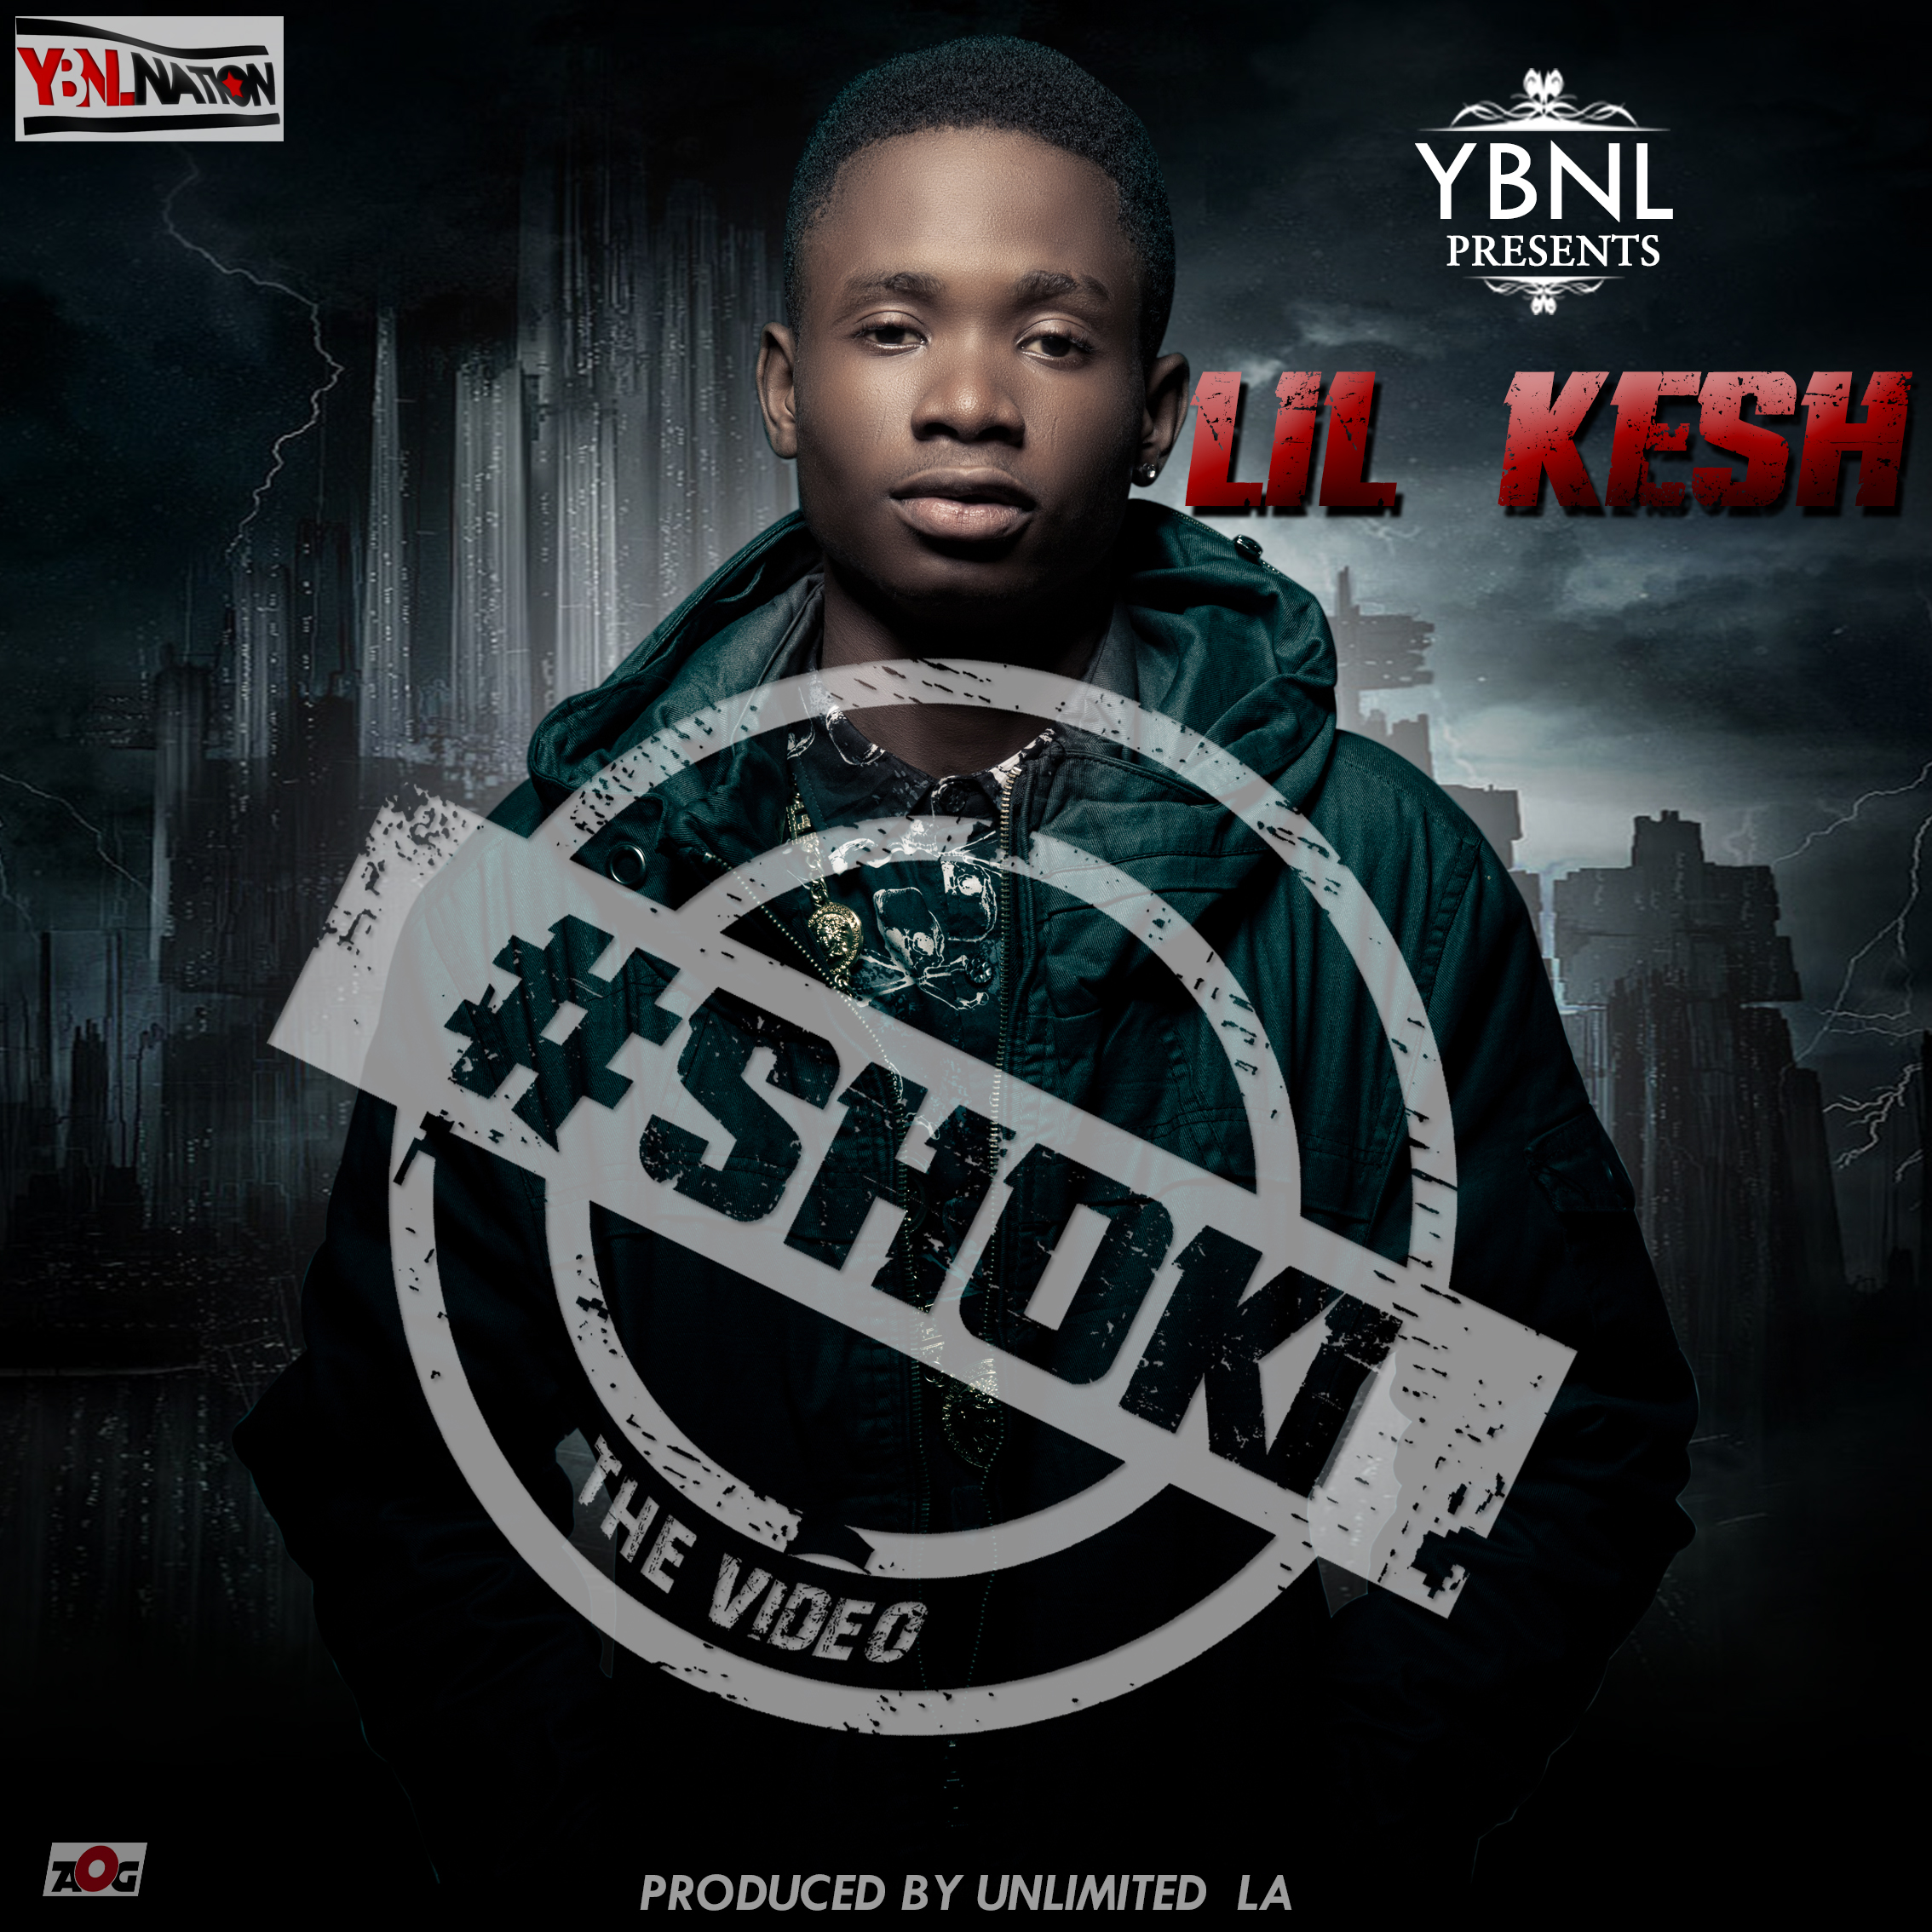 MUSIC: Shoki - Lil Kesh